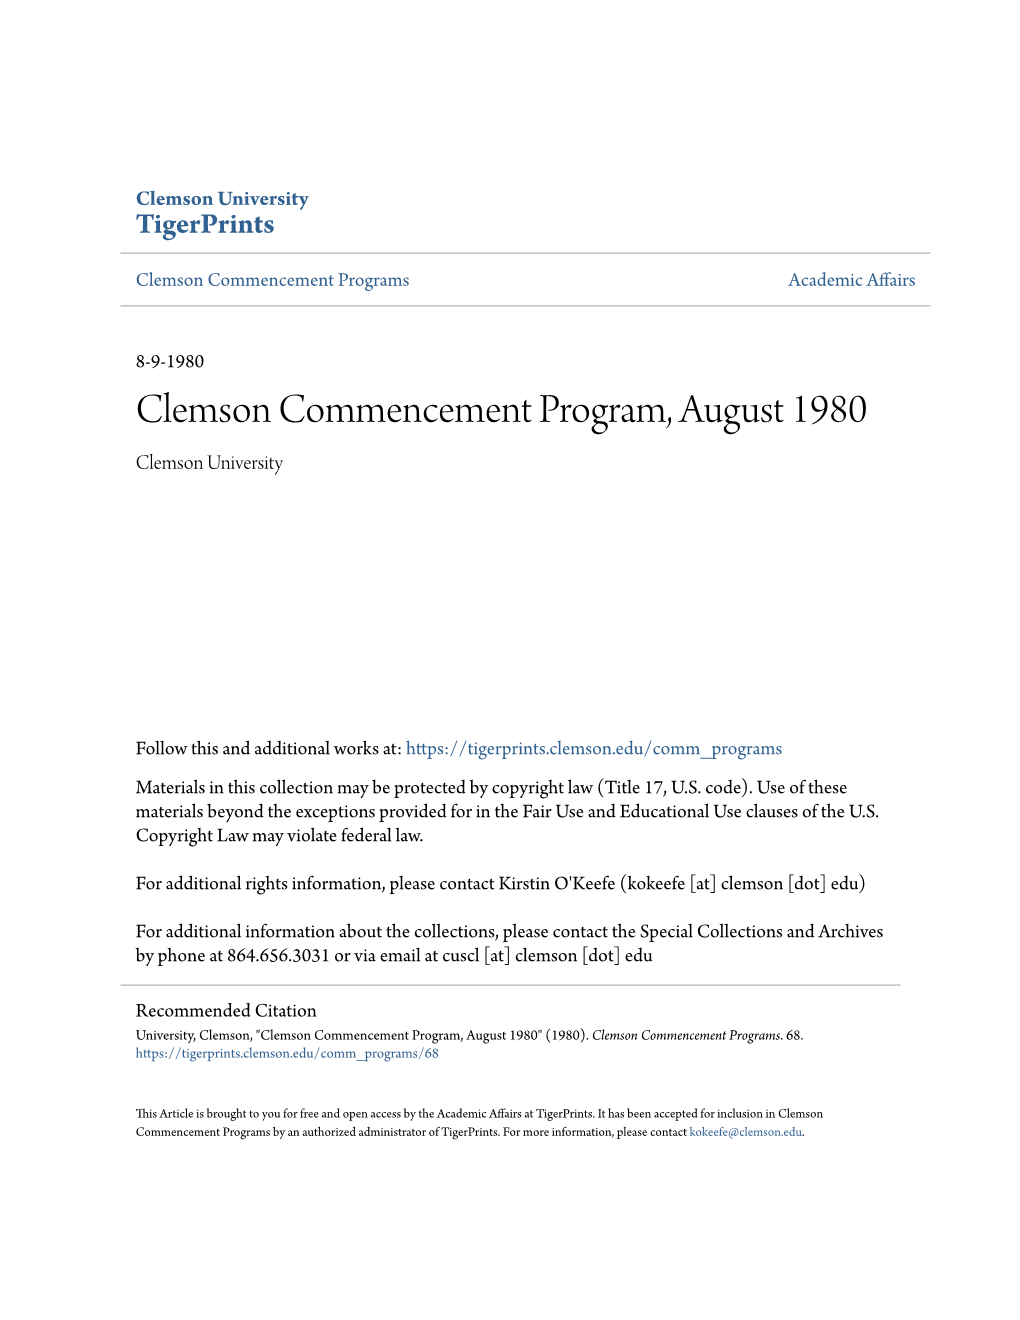 Clemson Commencement Program, August 1980 Clemson University